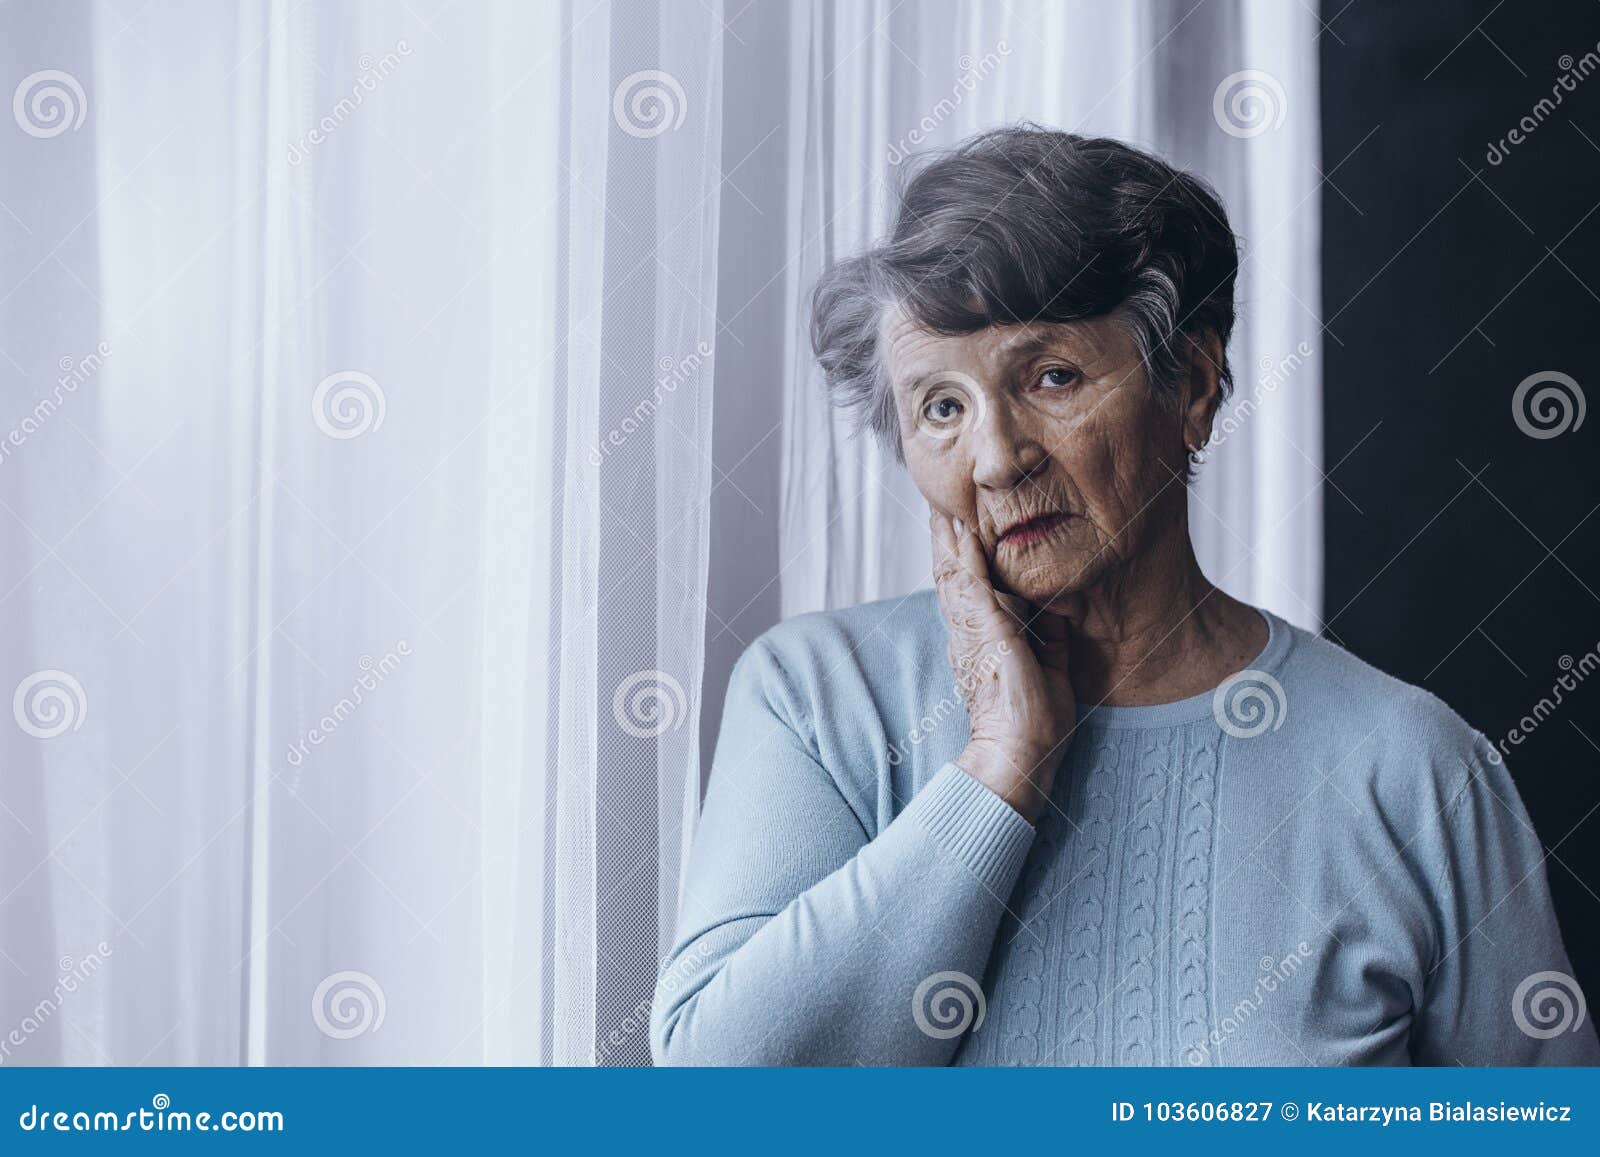 elderly person suffering from alzheimer